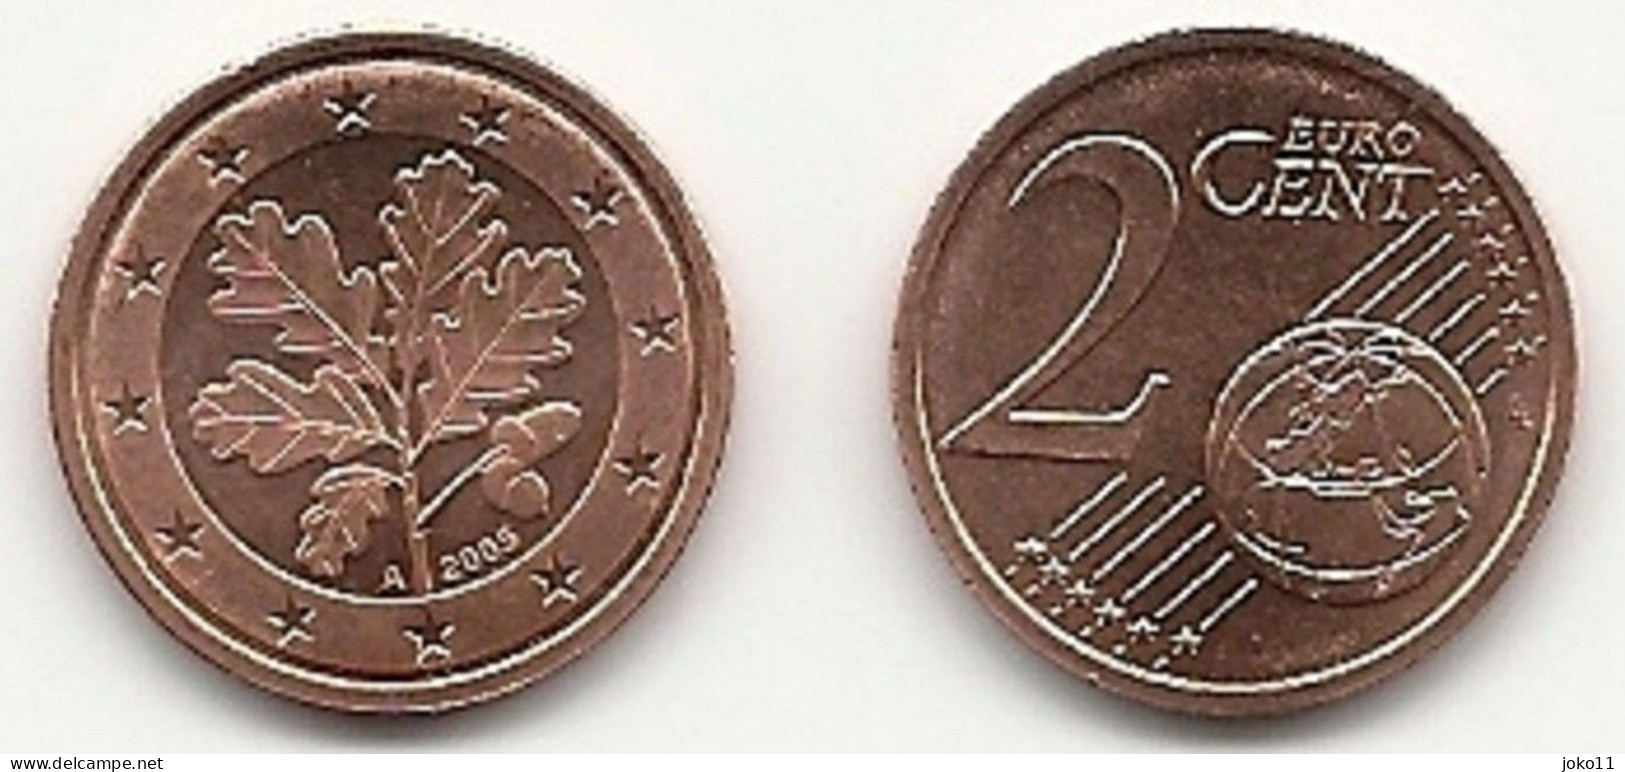 2 Cent, 2005 Prägestätte (A) Vz, Sehr Gut Erhaltene Umlaufmünze - Allemagne